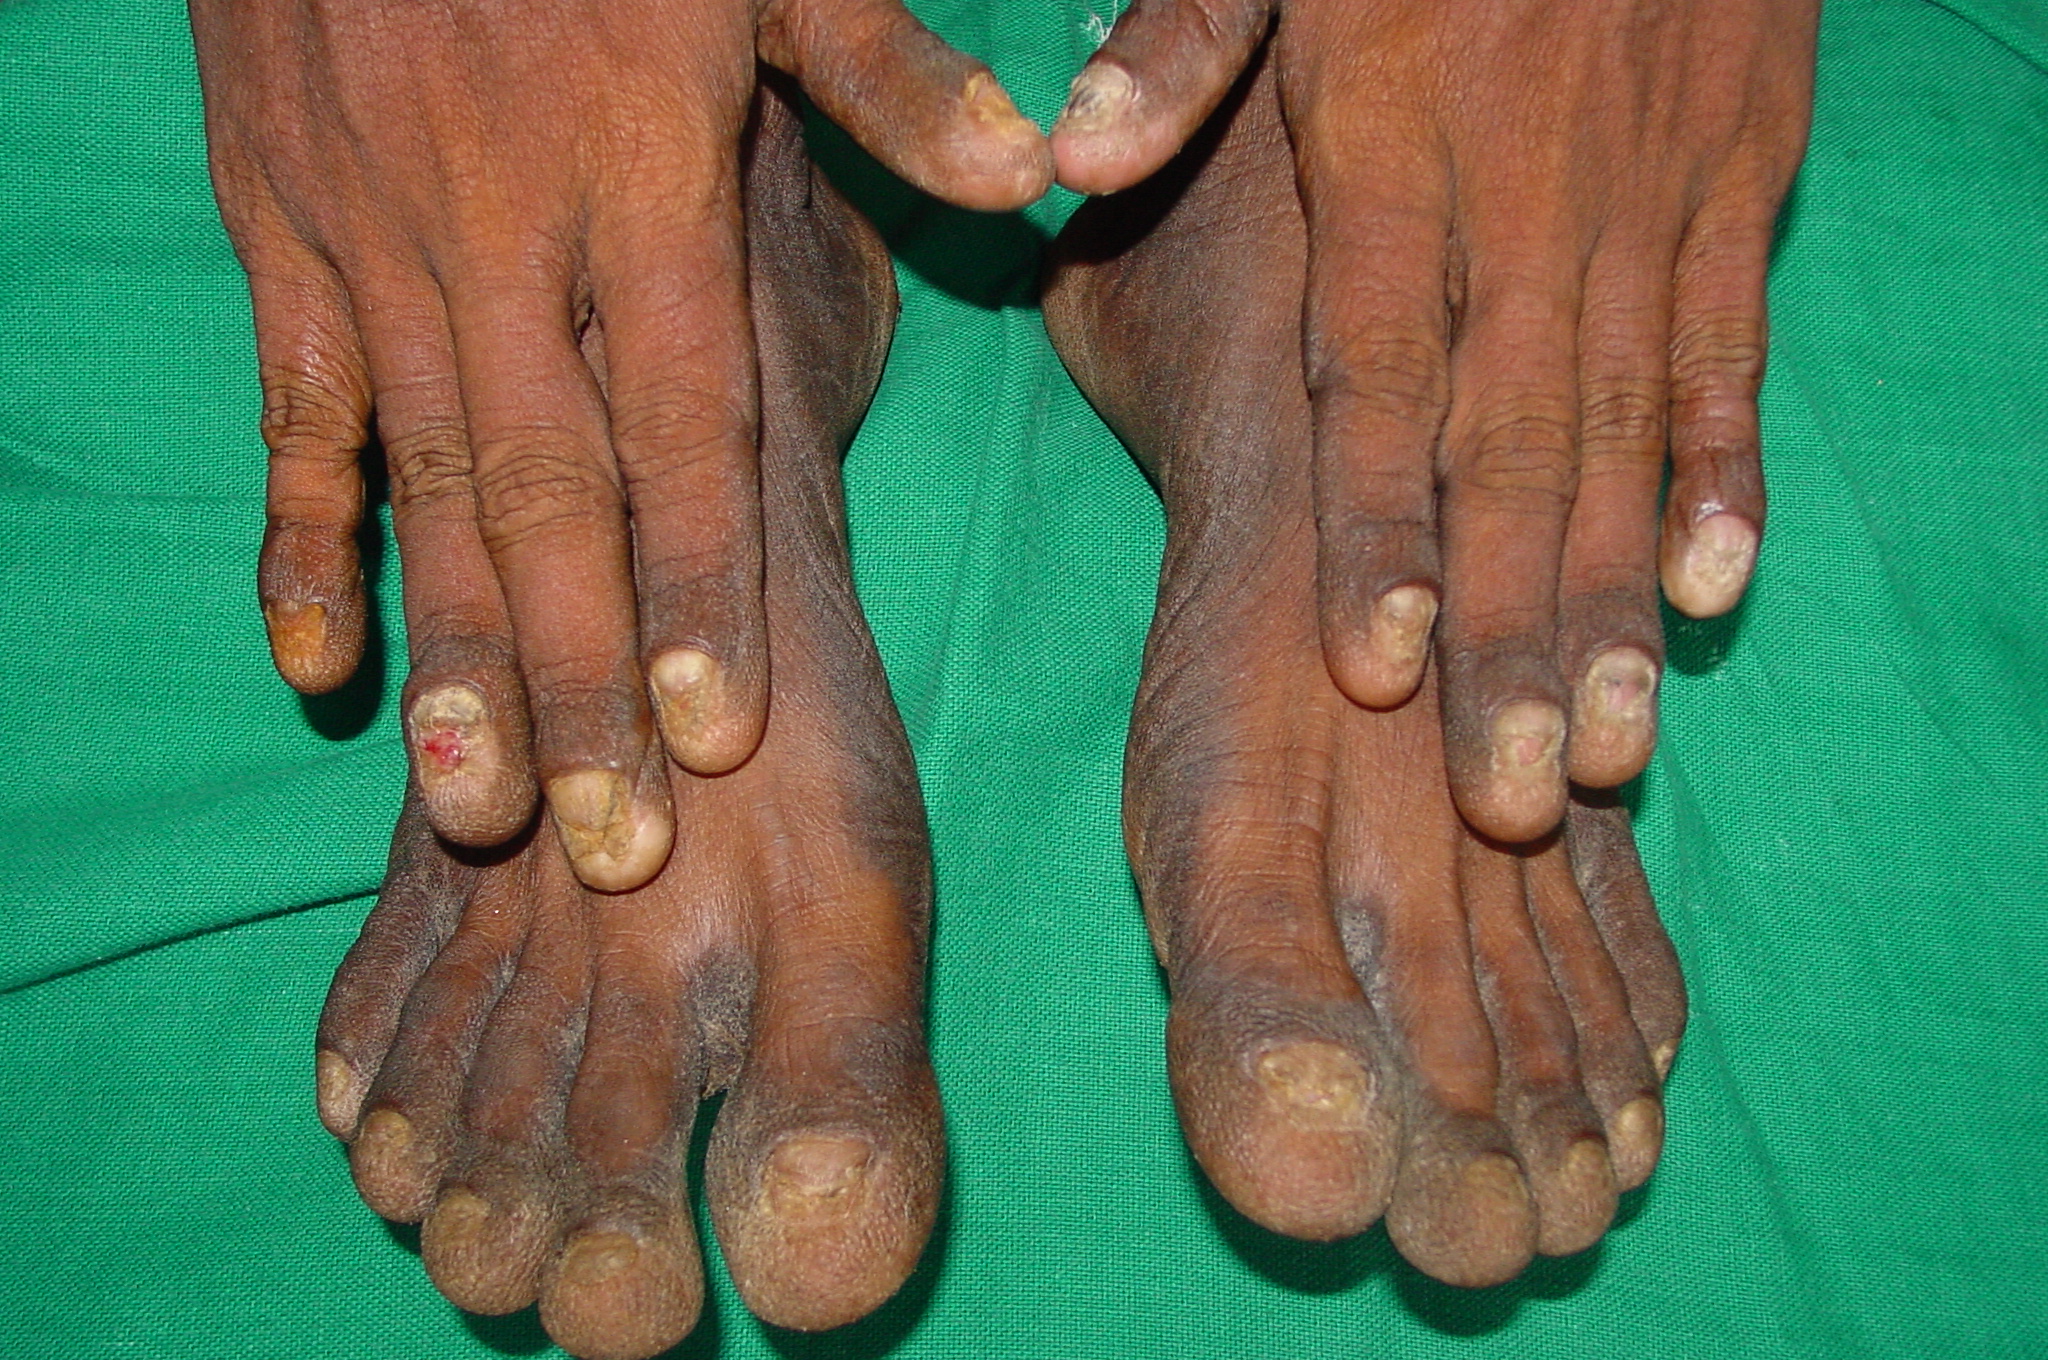 Yellow nail syndrome | Eurorad